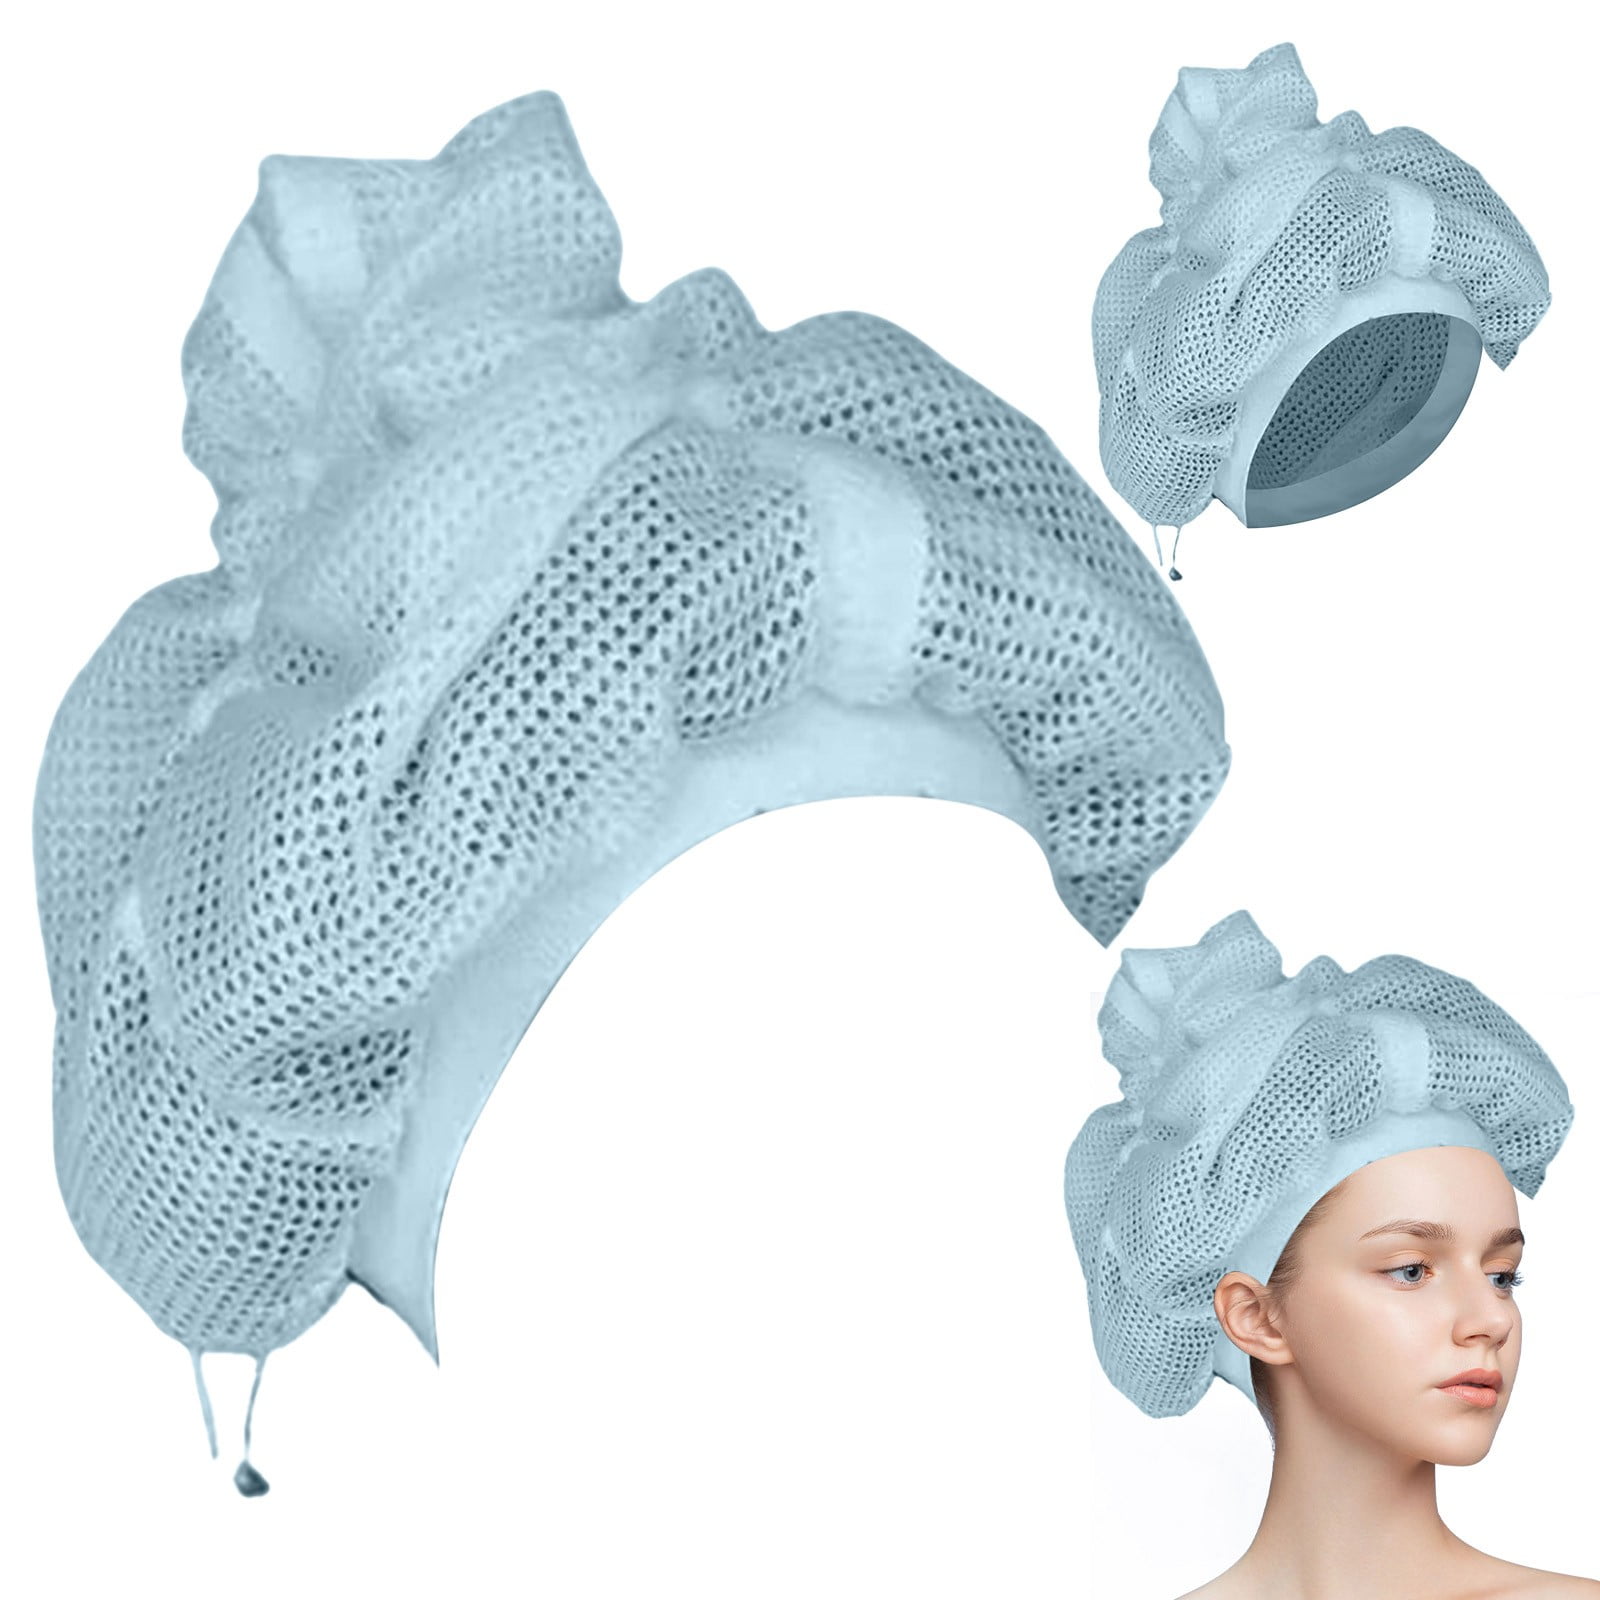 Net plopping Bonnet | Extra Curls | Soulta - Soulta Beauty